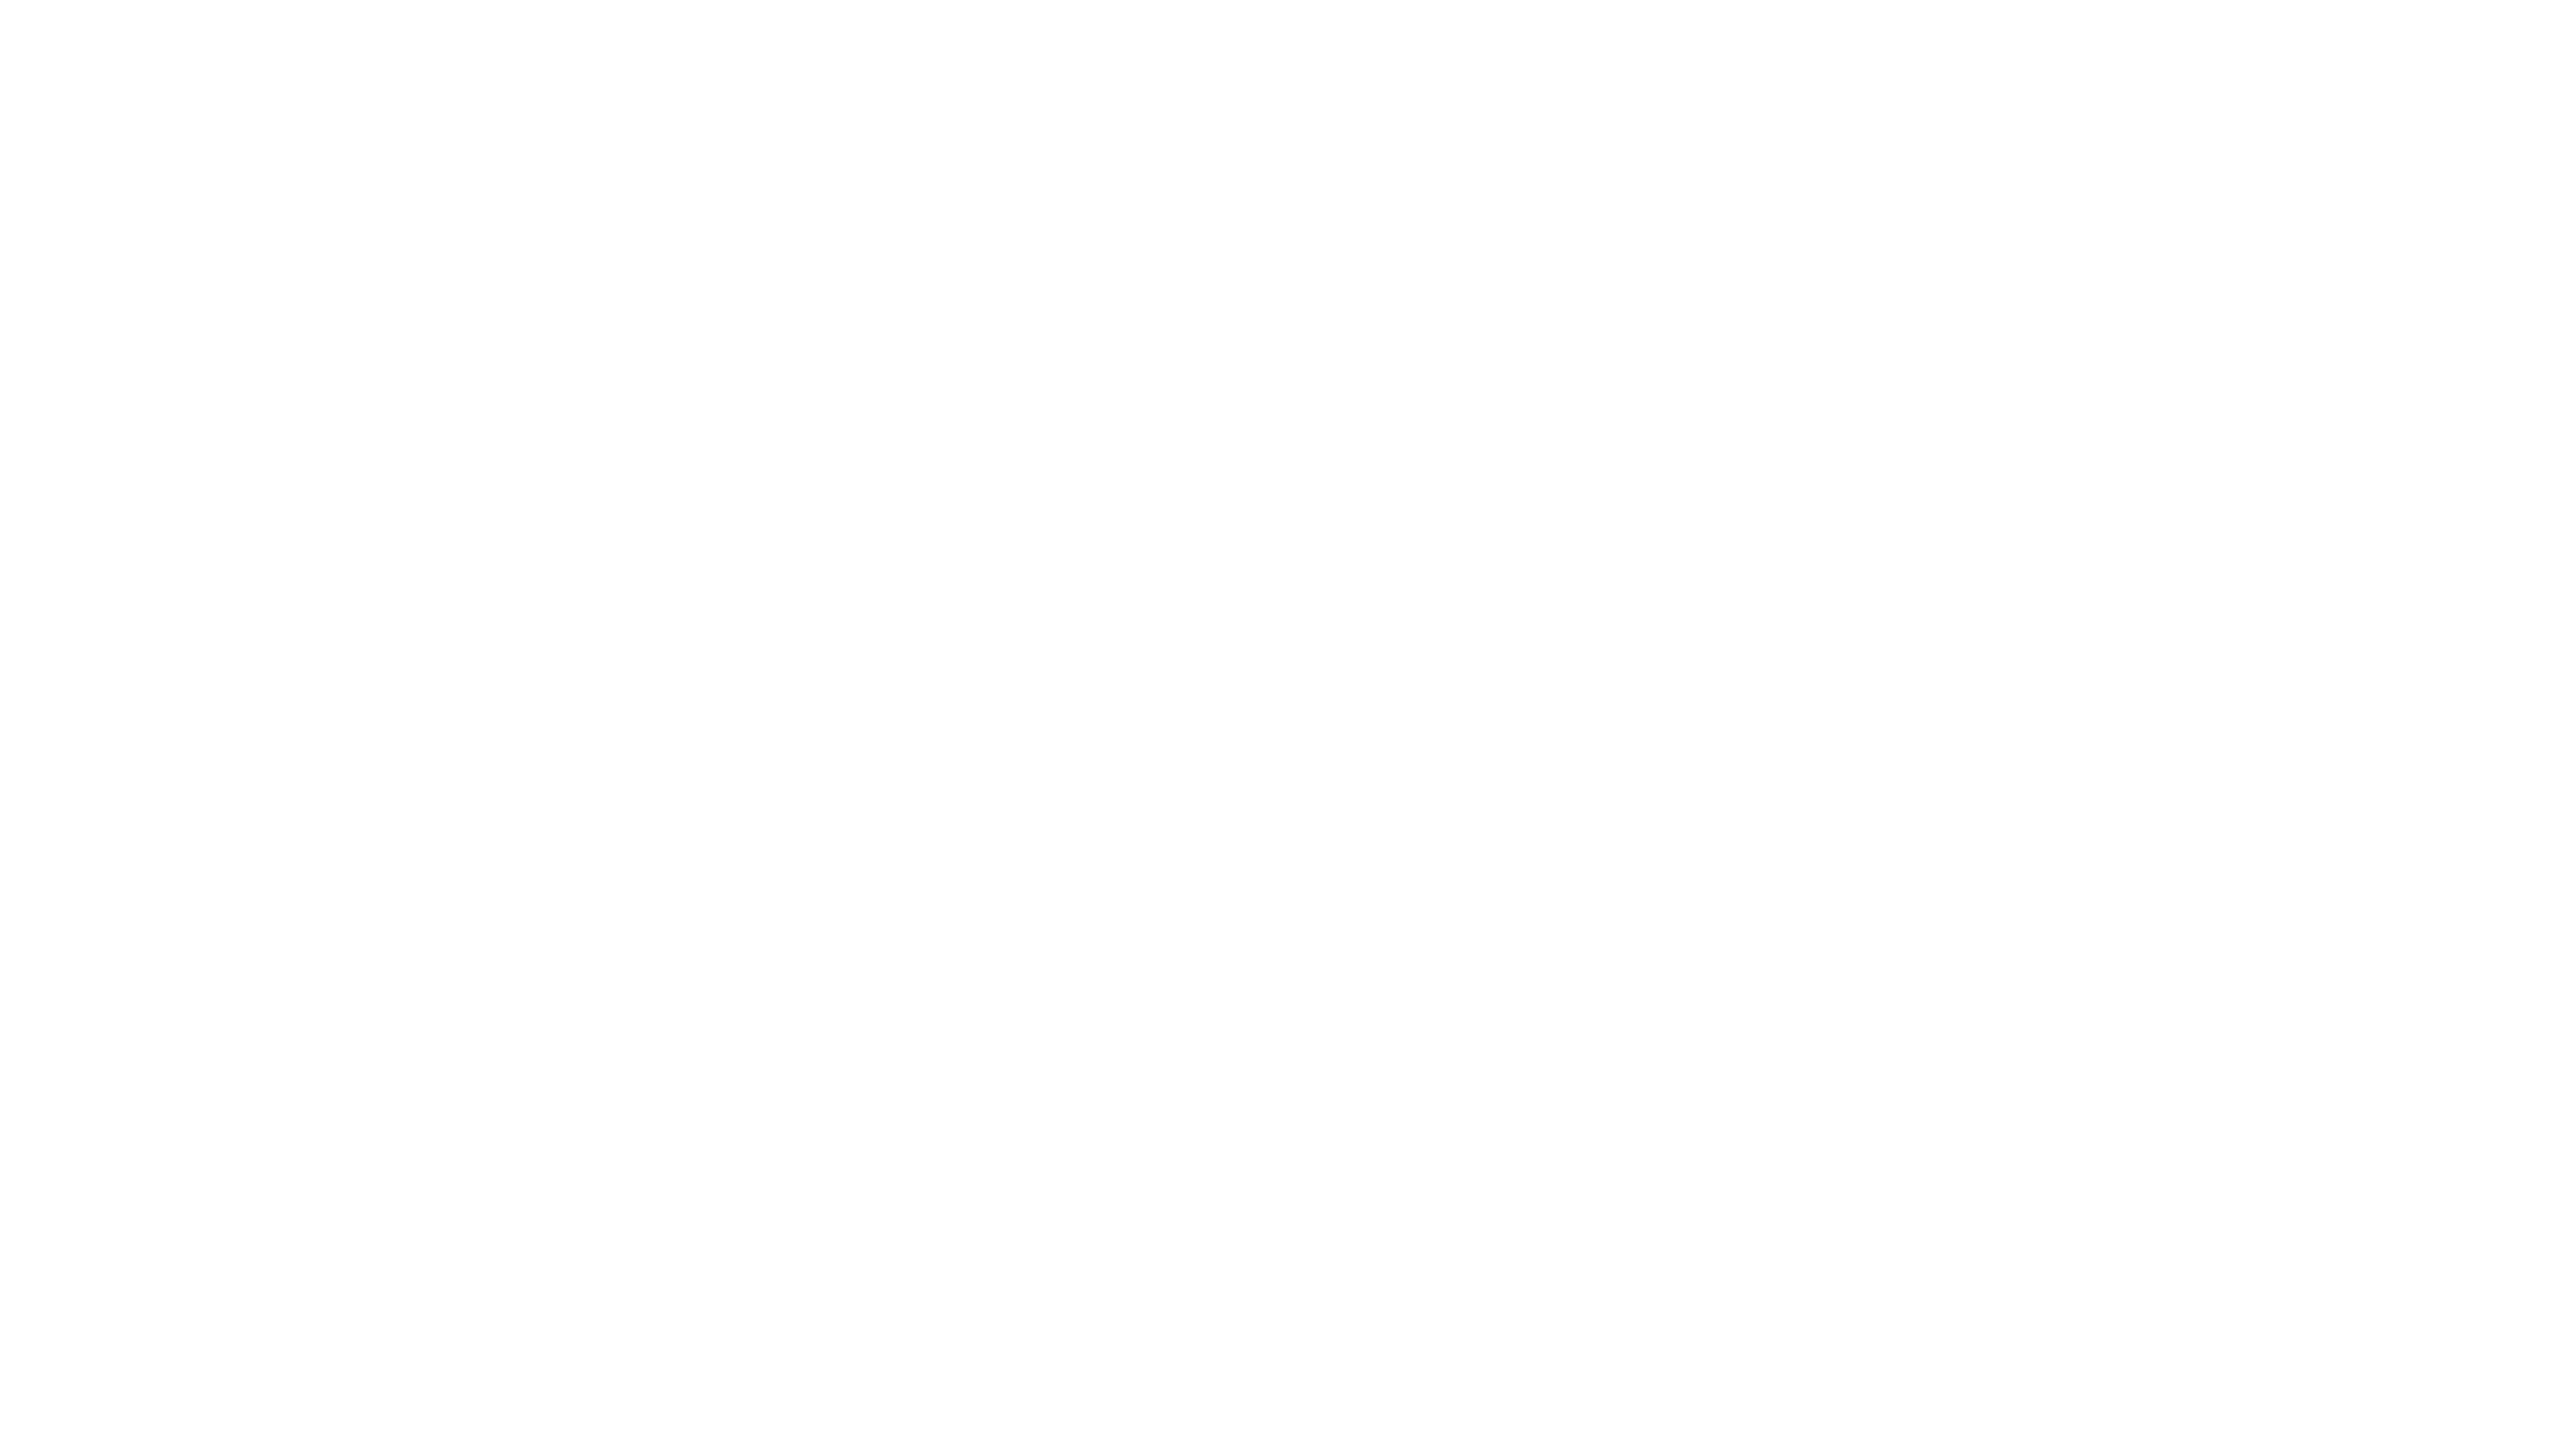 4199px x 2363px - Hello world! â€“ Beauty Station